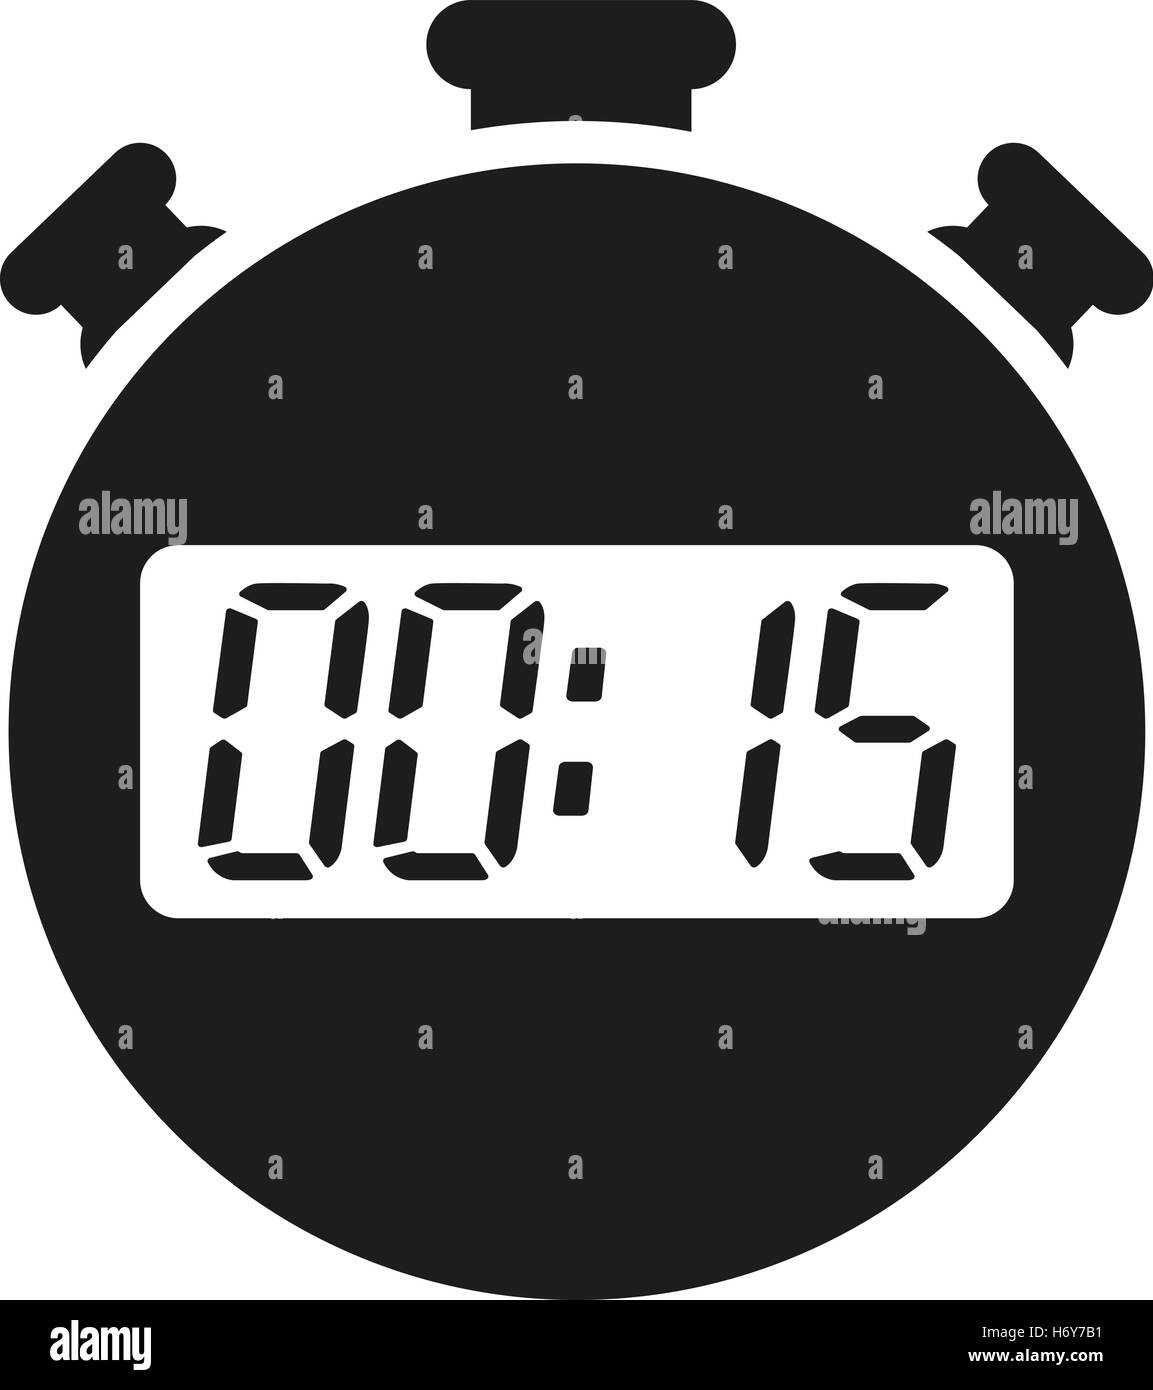 Los 15 segundos, minutos icono cronómetro. Reloj y el Reloj, temporizador  de cuenta regresiva, símbolo. Interfaz de usuario. Web. Logotipo. Firmar.  Diseño plano. App. Stock v Imagen Vector de stock - Alamy